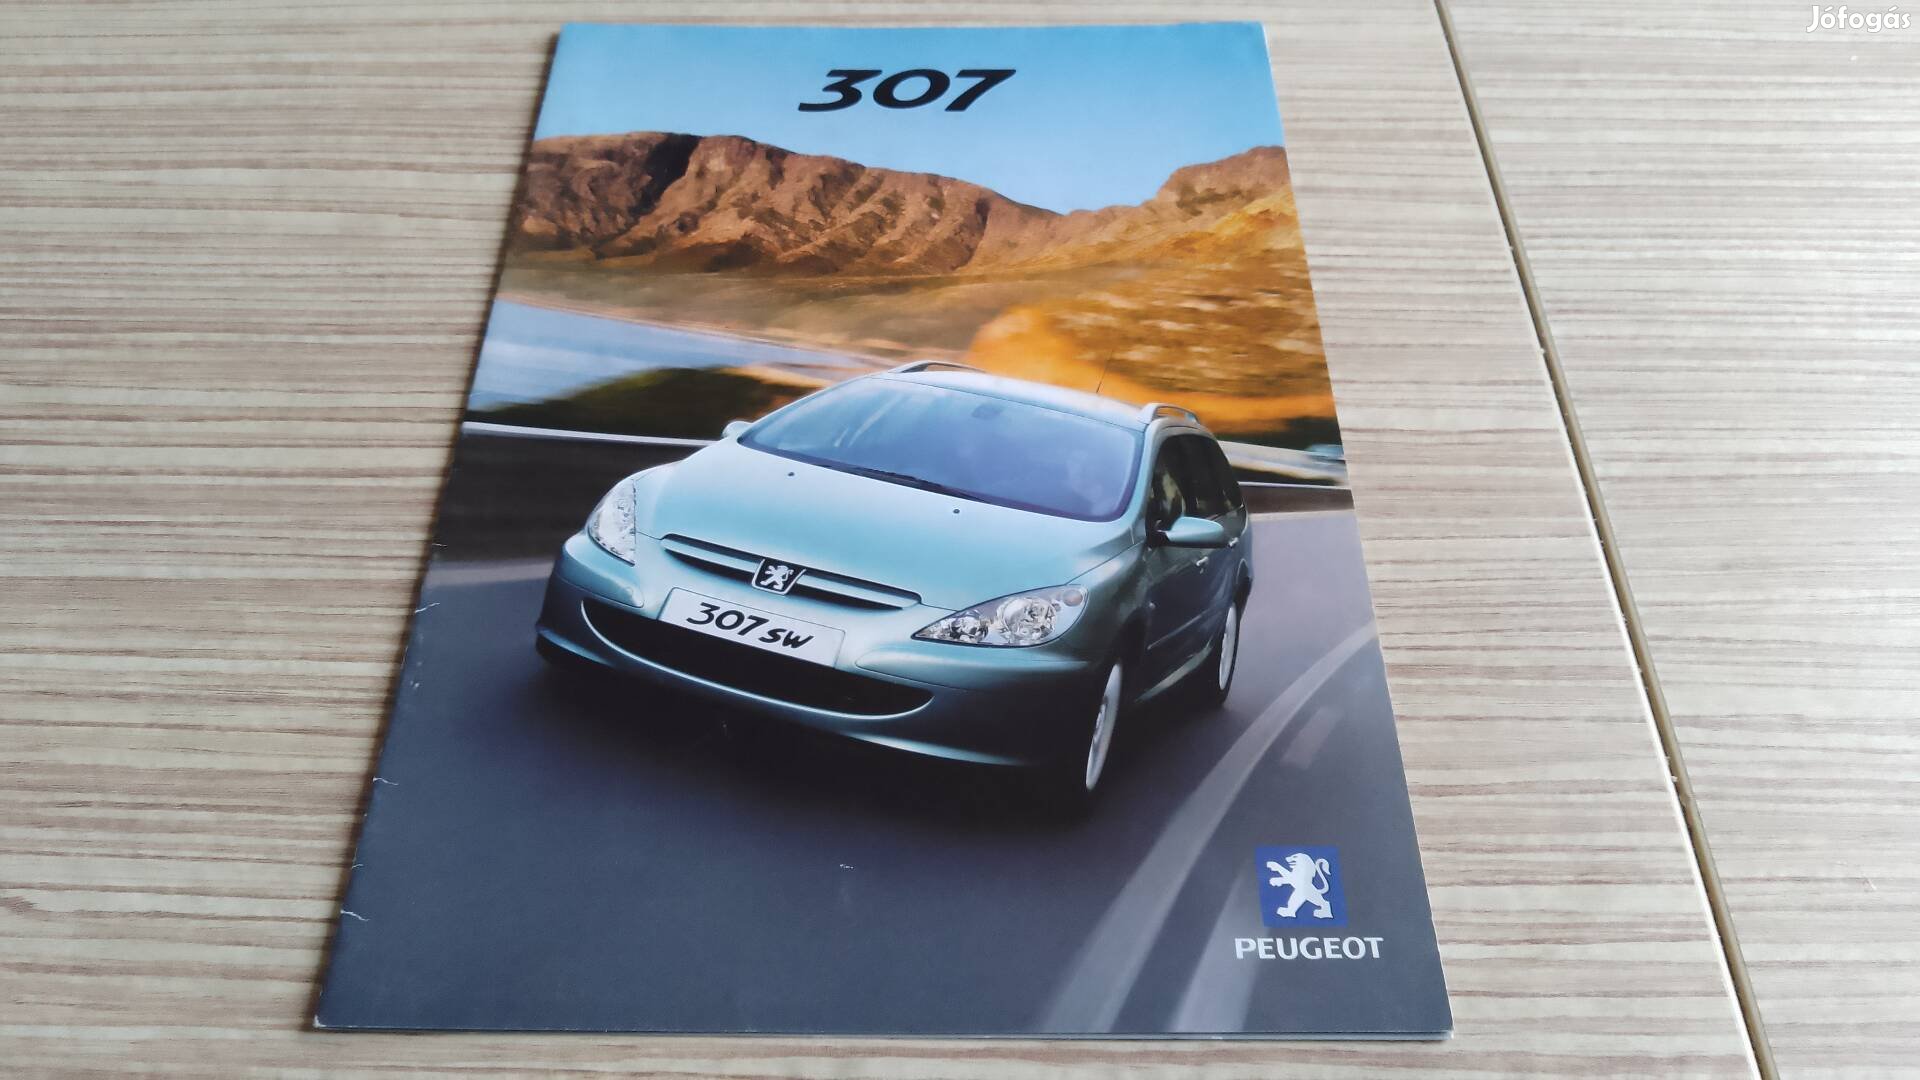 Peugeot 307 (2002) magyar nyelvű prospektus, katalógus.